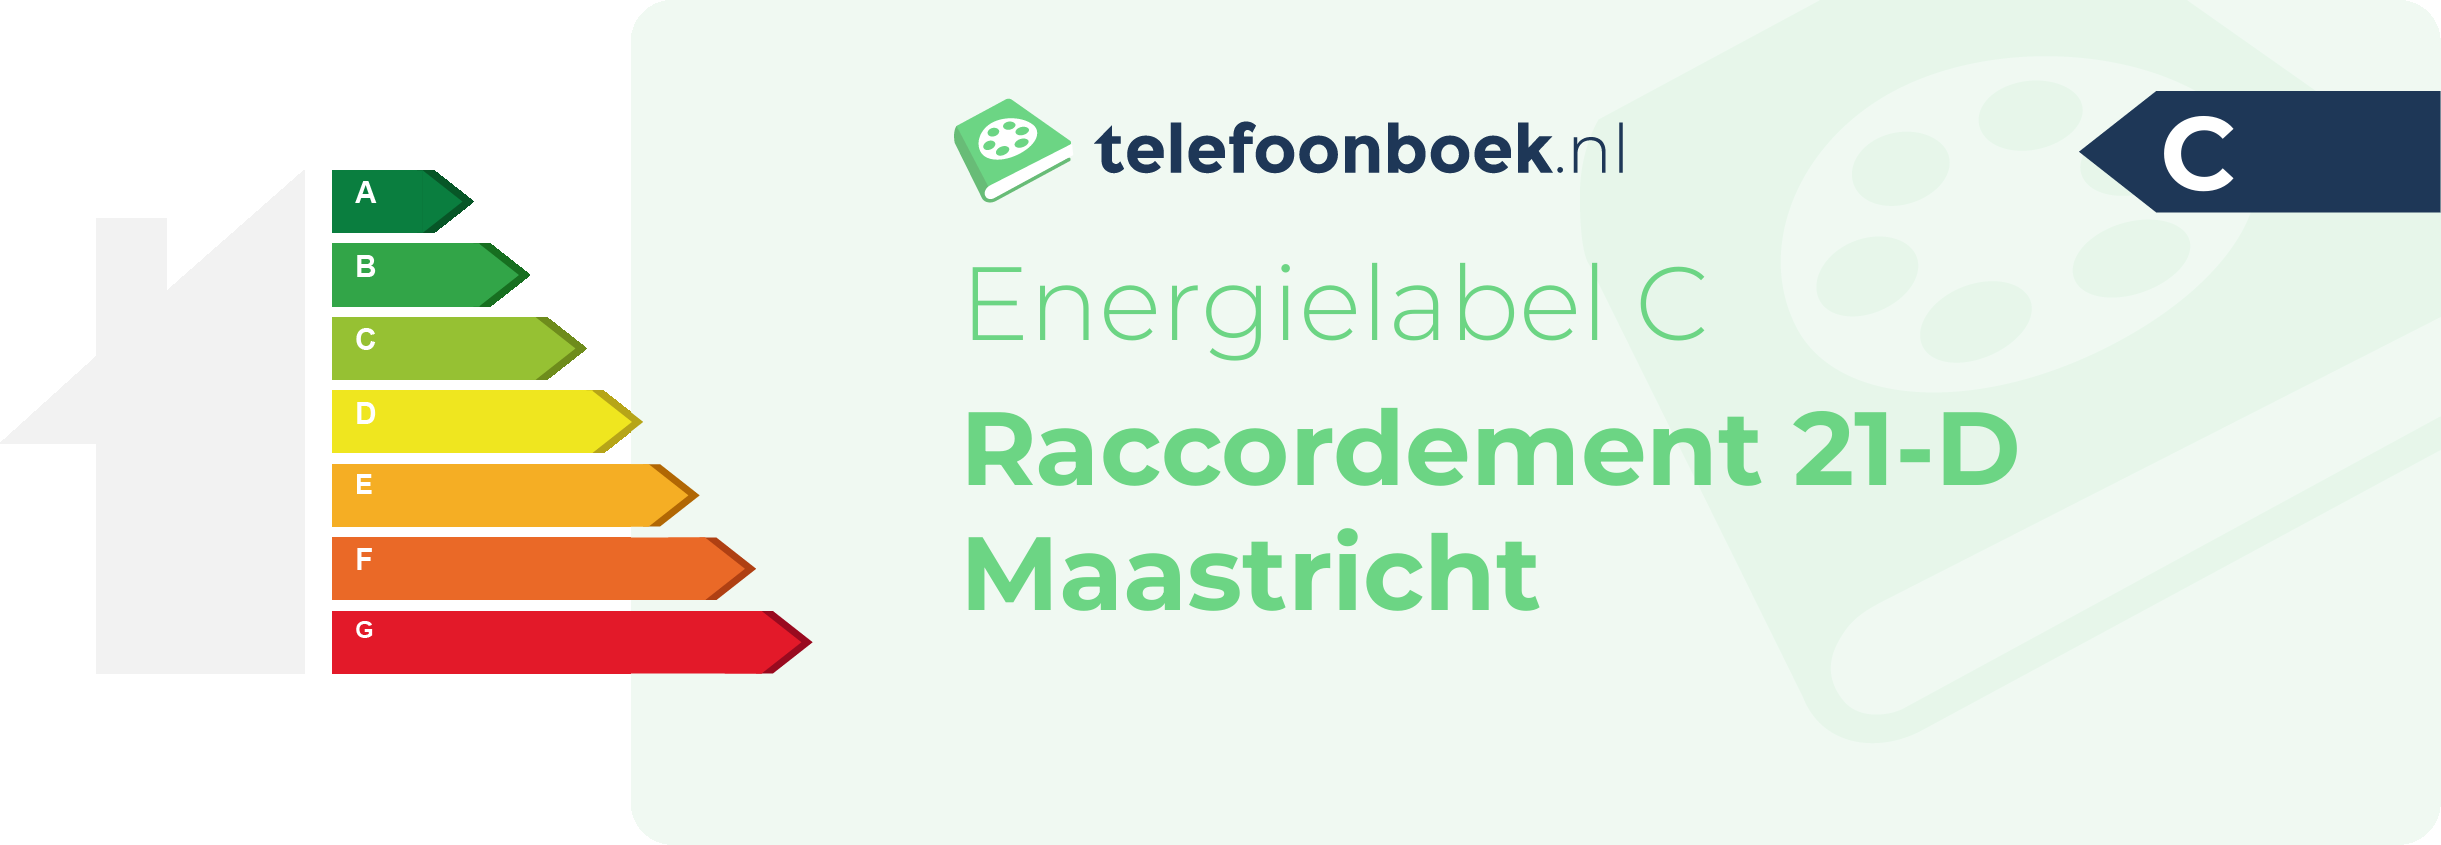 Energielabel Raccordement 21-D Maastricht